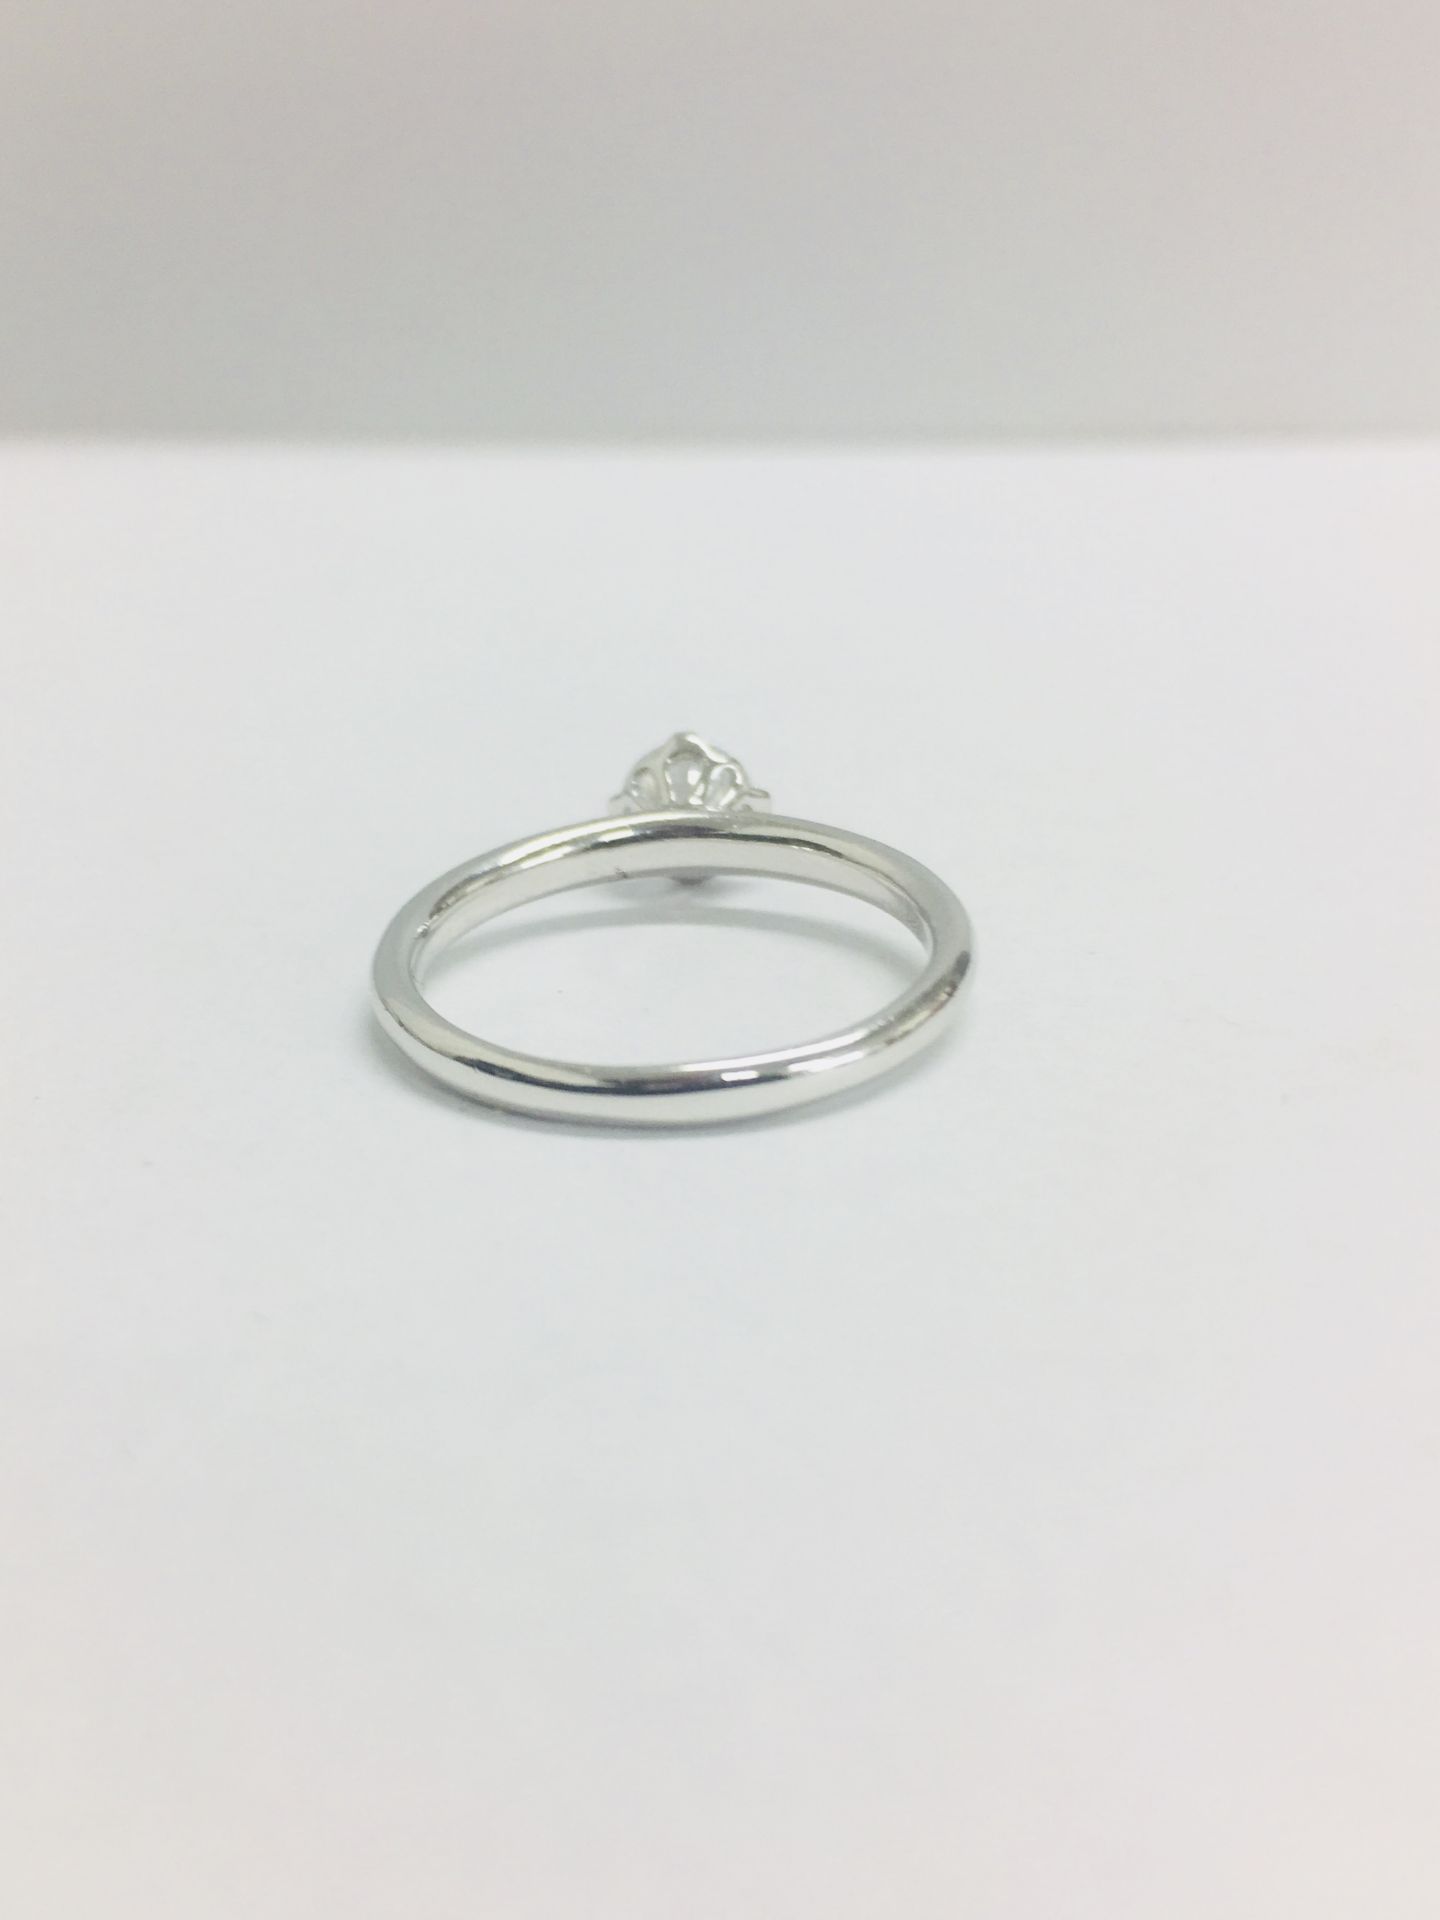 Platinum diamond solitaire ring,0.50ct brillliant cut diamond h colour vs clarity(clarity enhanced), - Bild 5 aus 6